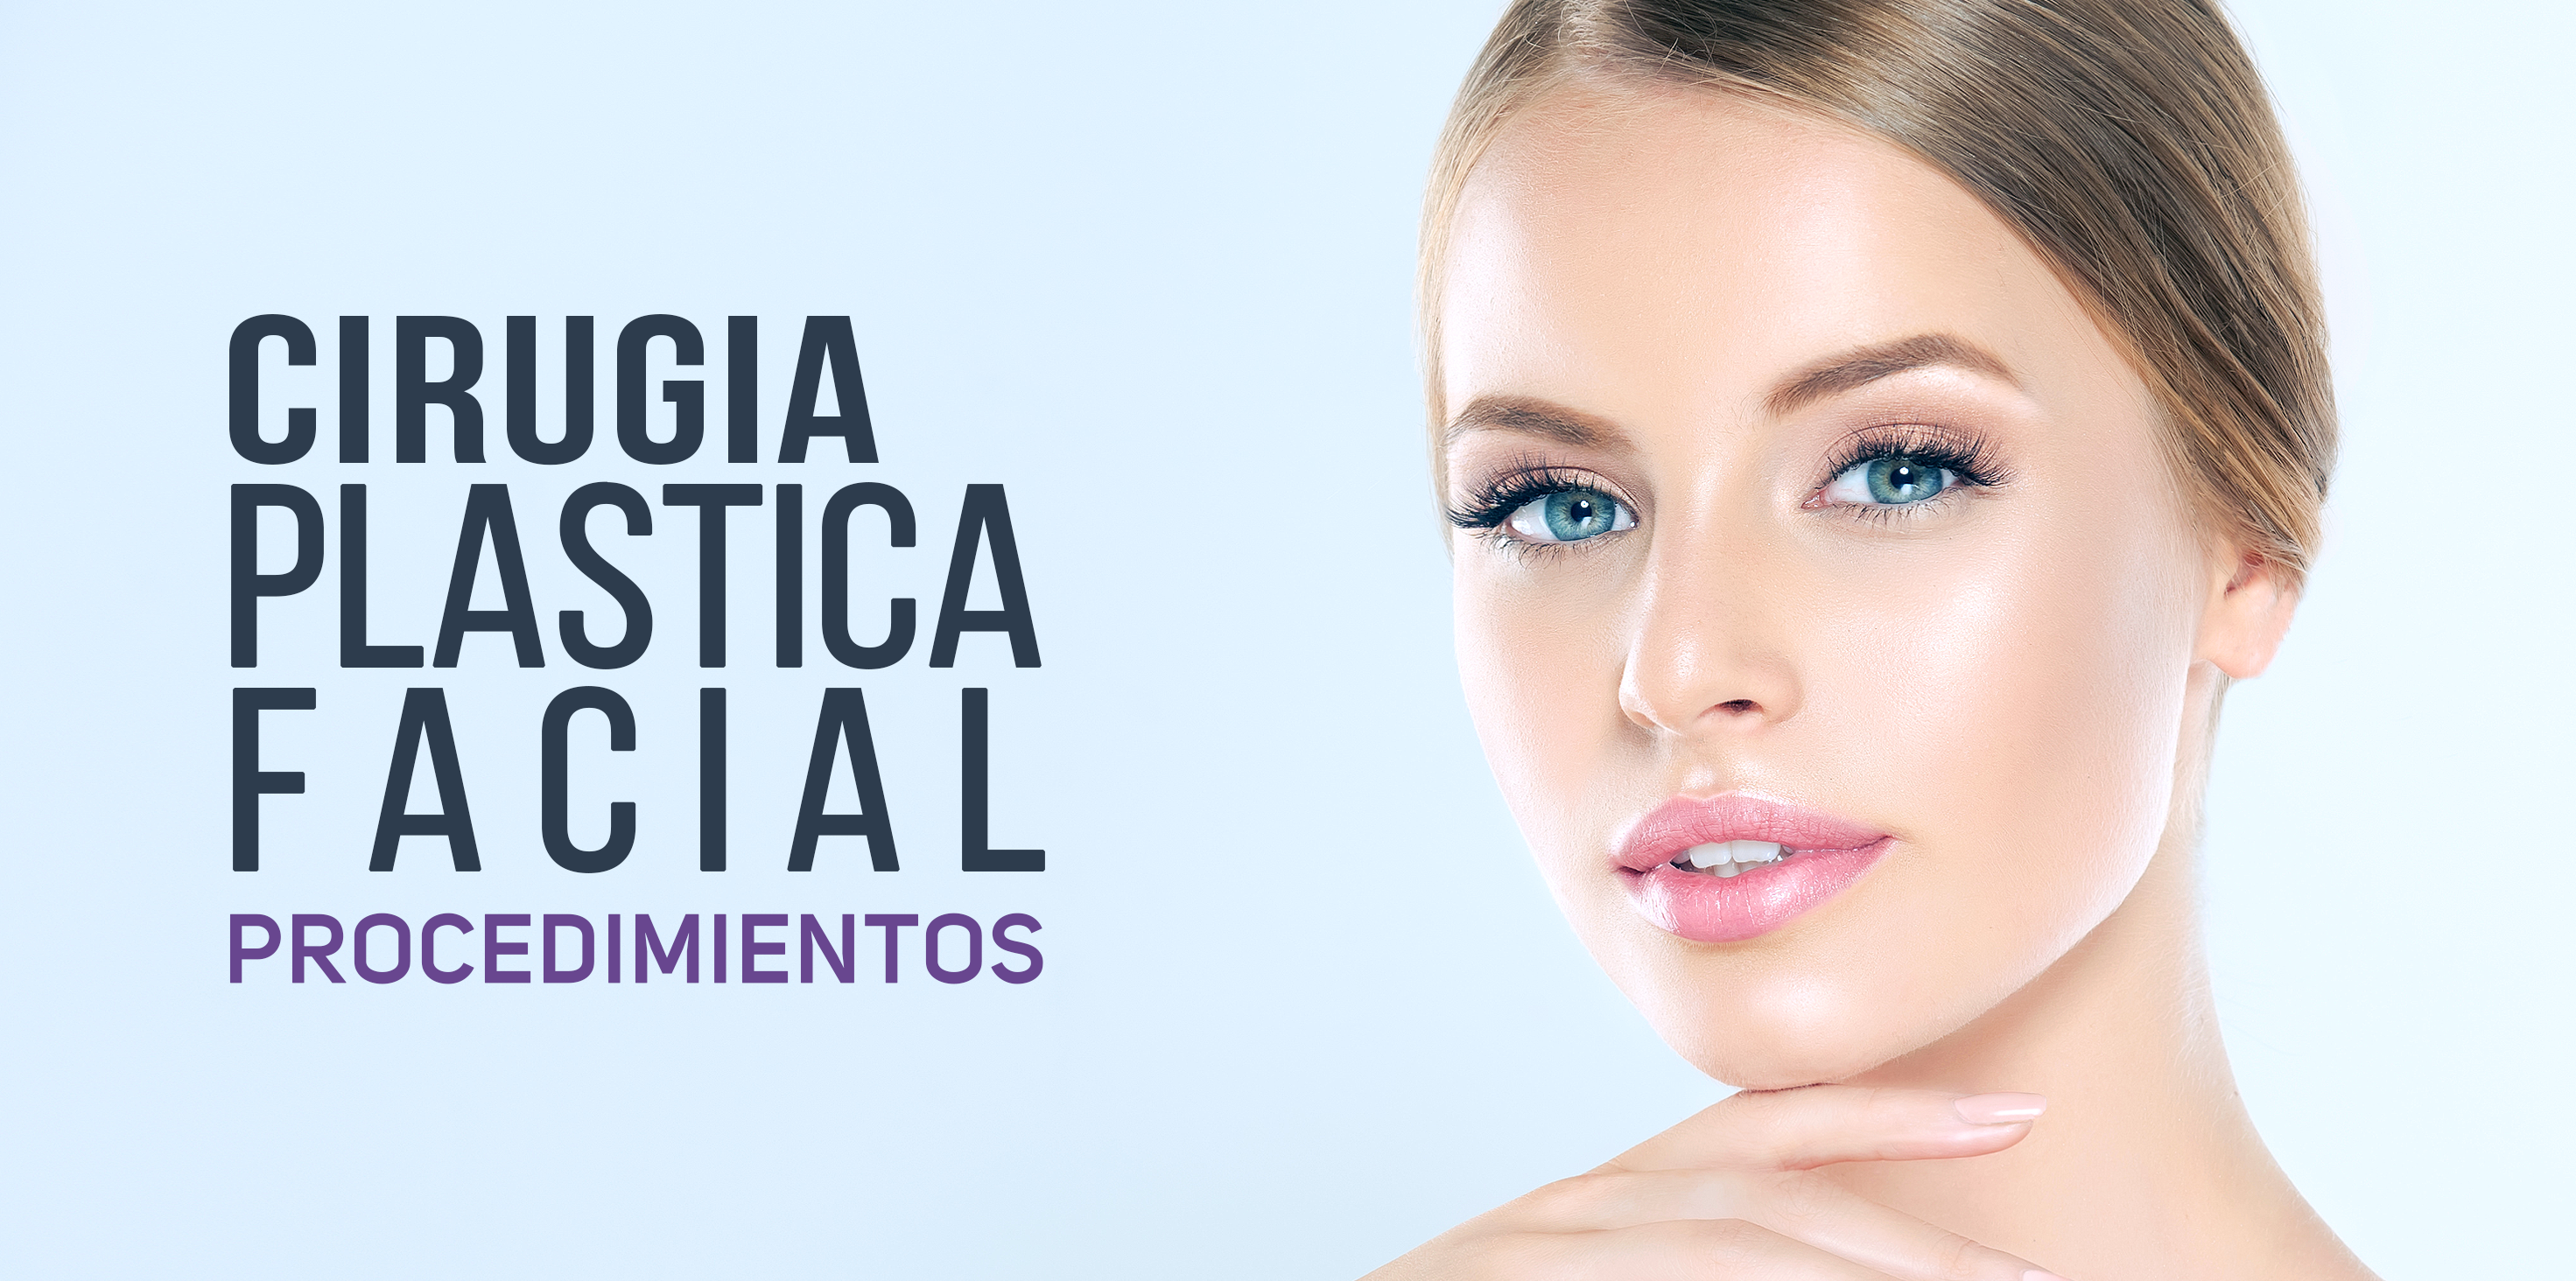 El Dr. Eduardo Santos de Rinoplastia Tijuana, ofrece procedimientos de cirugía plástica facial en Tijuana, México.